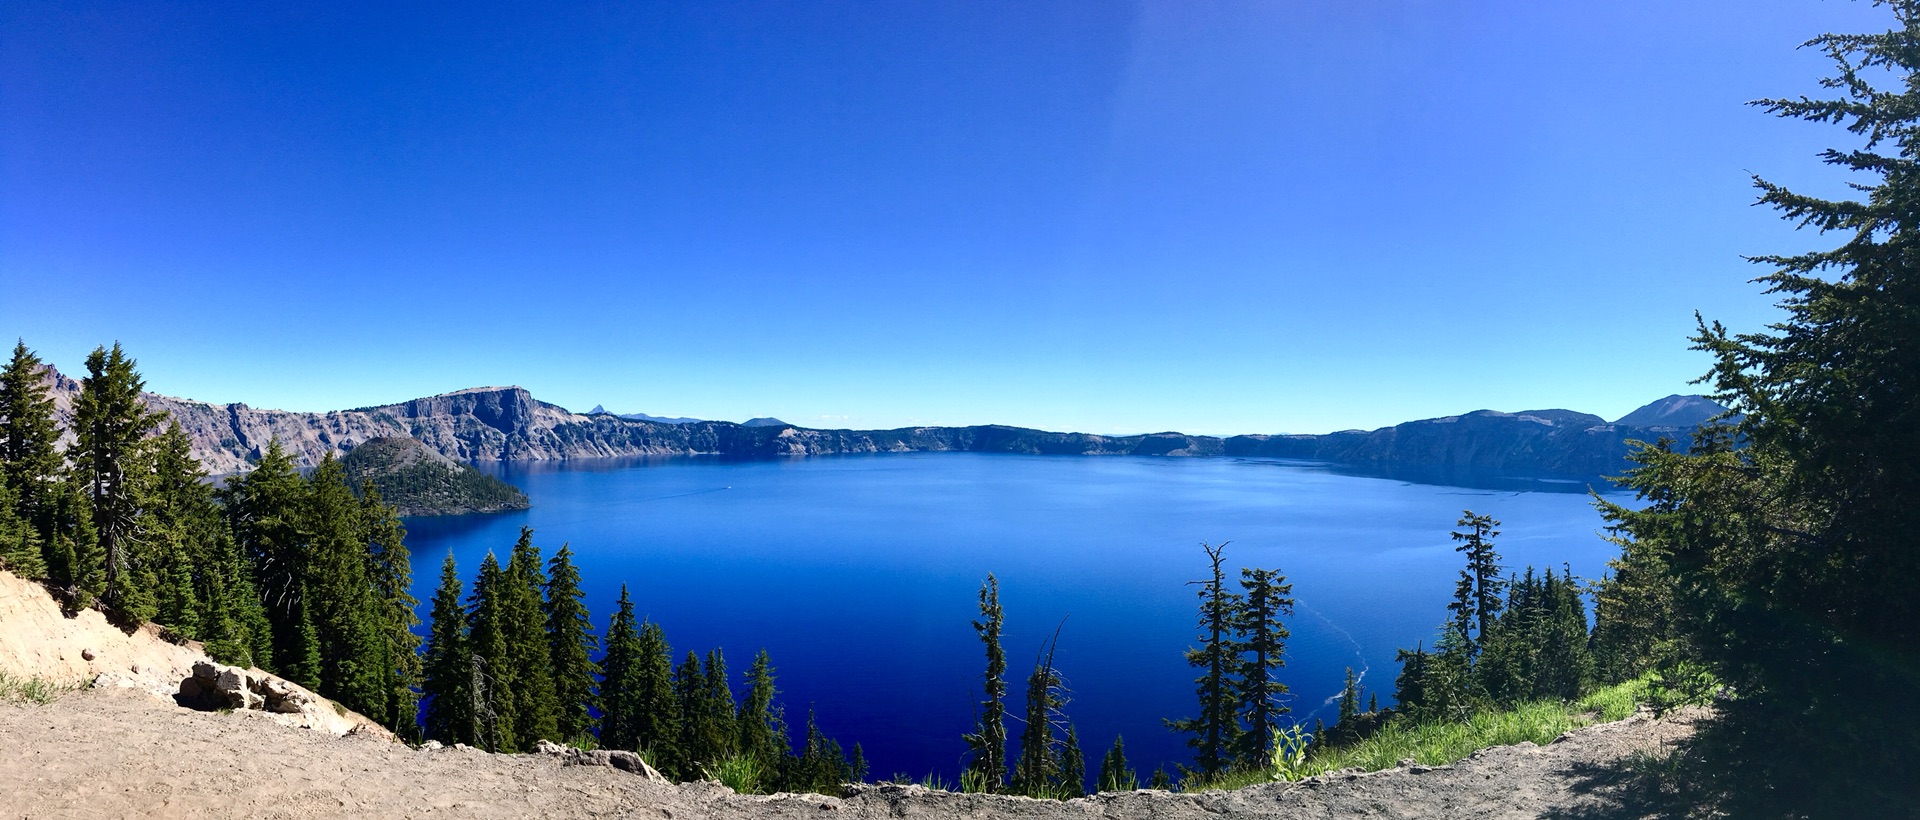 西雅图 湾区 火山湖国家公园 Crater Lake Np 旅游攻略 马蜂窝